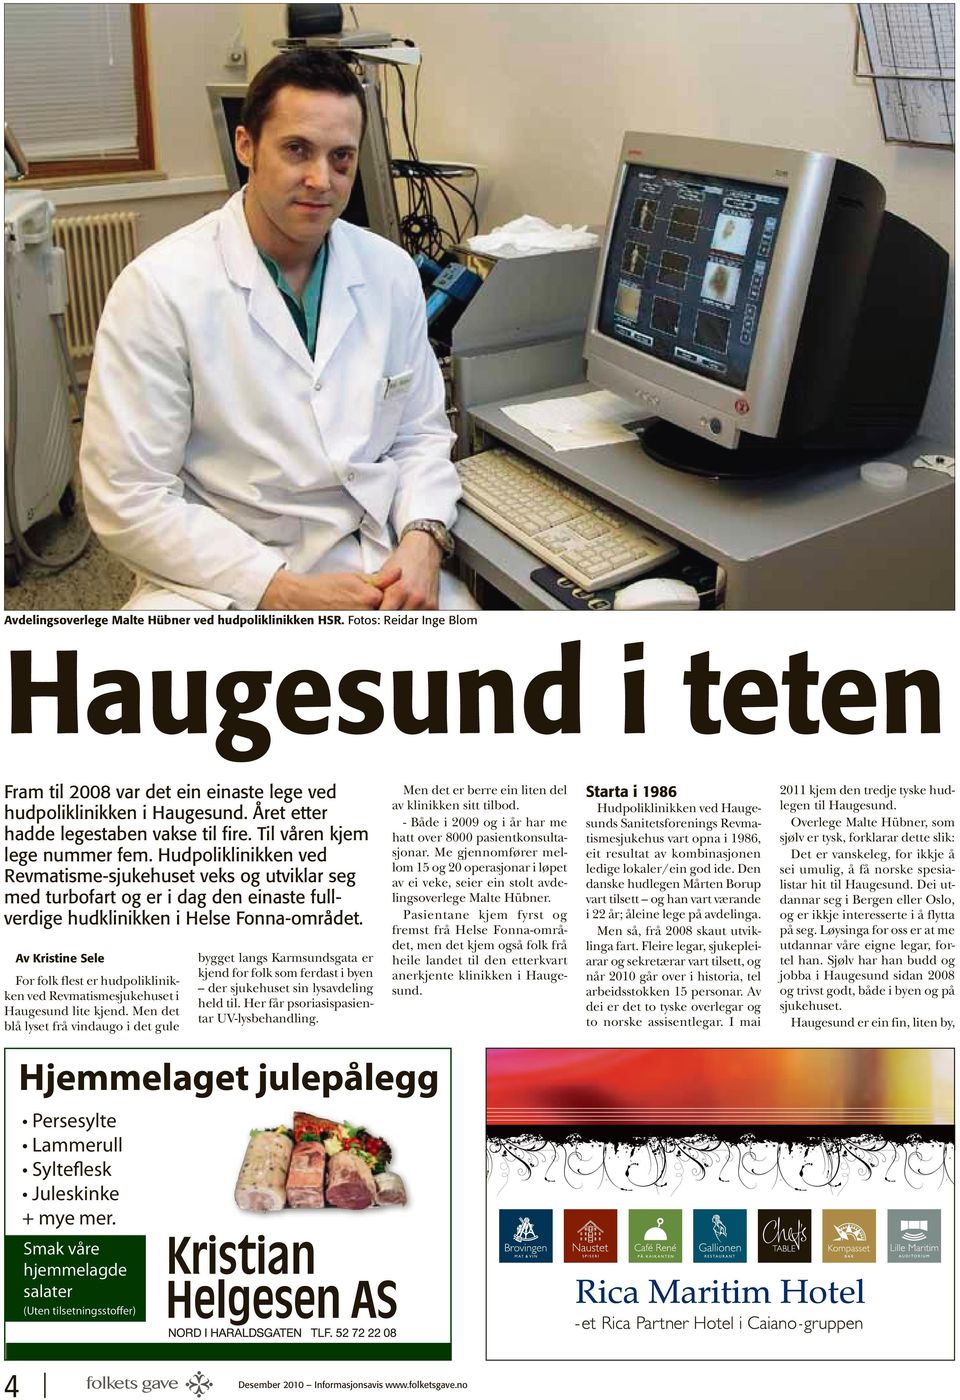 Hudpoliklinikken ved Revmatisme-sjukehuset veks og utviklar seg med turbofart og er i dag den einaste fullverdige hudklinikken i Helse Fonna-området.